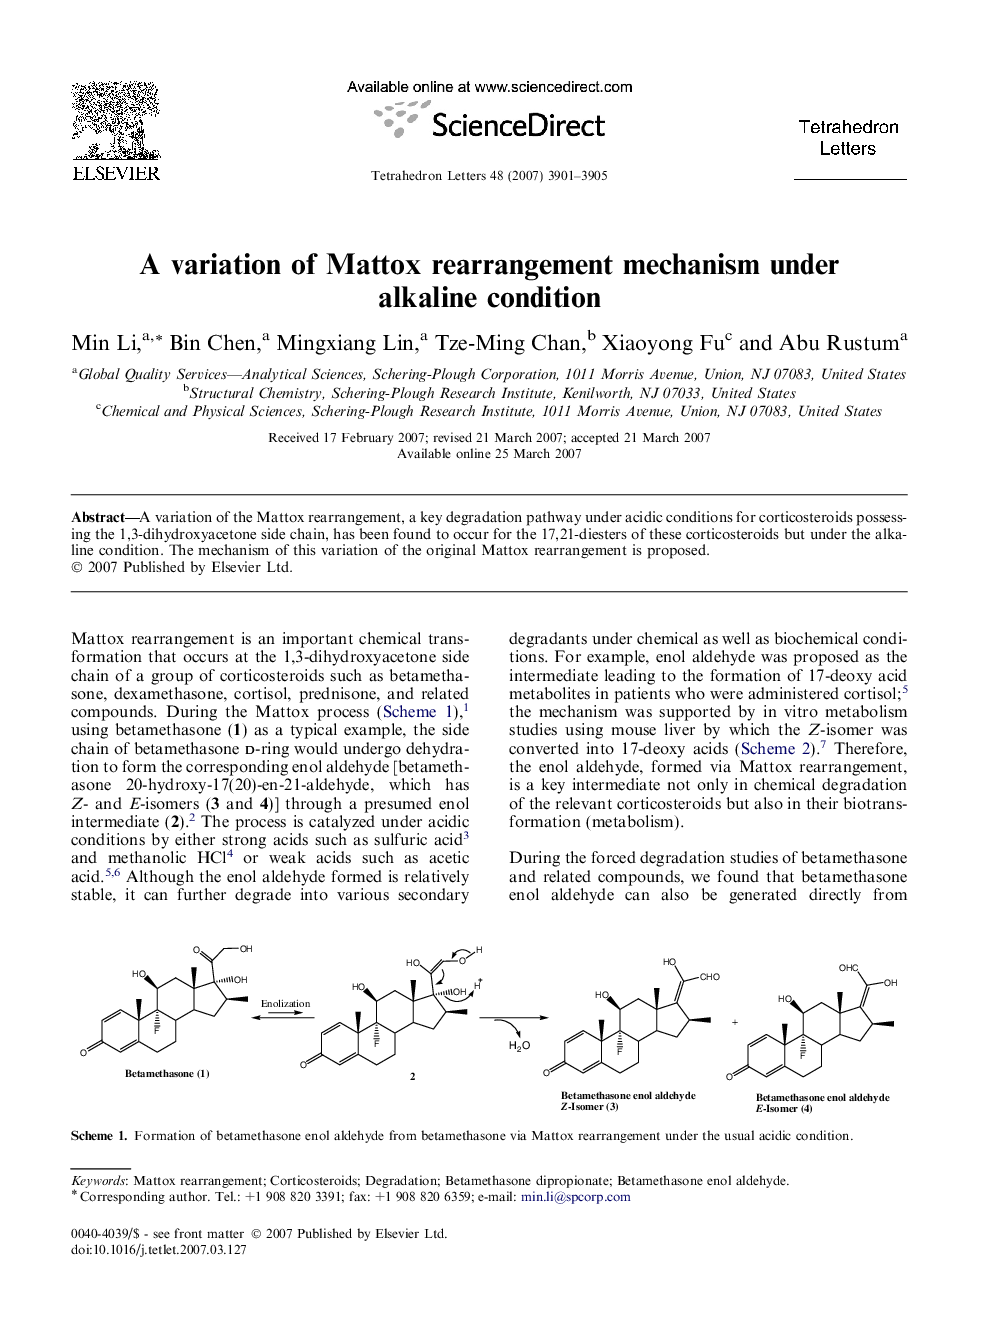 A variation of Mattox rearrangement mechanism under alkaline condition